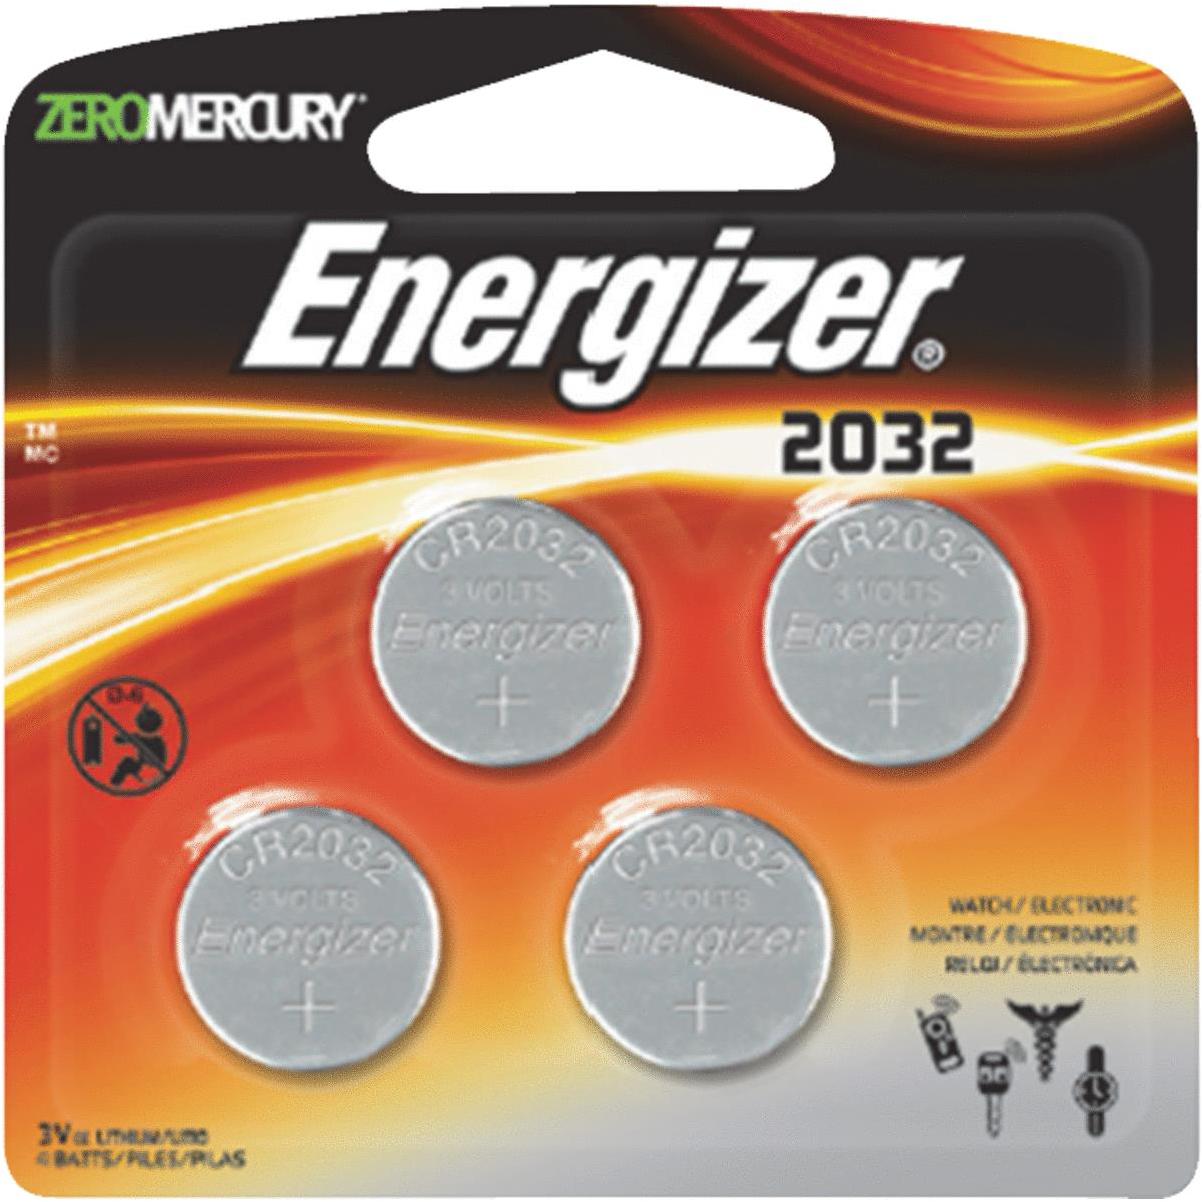 Cr2032 batteries. Литиевая батарейка 3v cr2032. Батарейка cr2032 3v Lithium. Батарейка cr2032 (3v). Батарейка Energizer 2032.